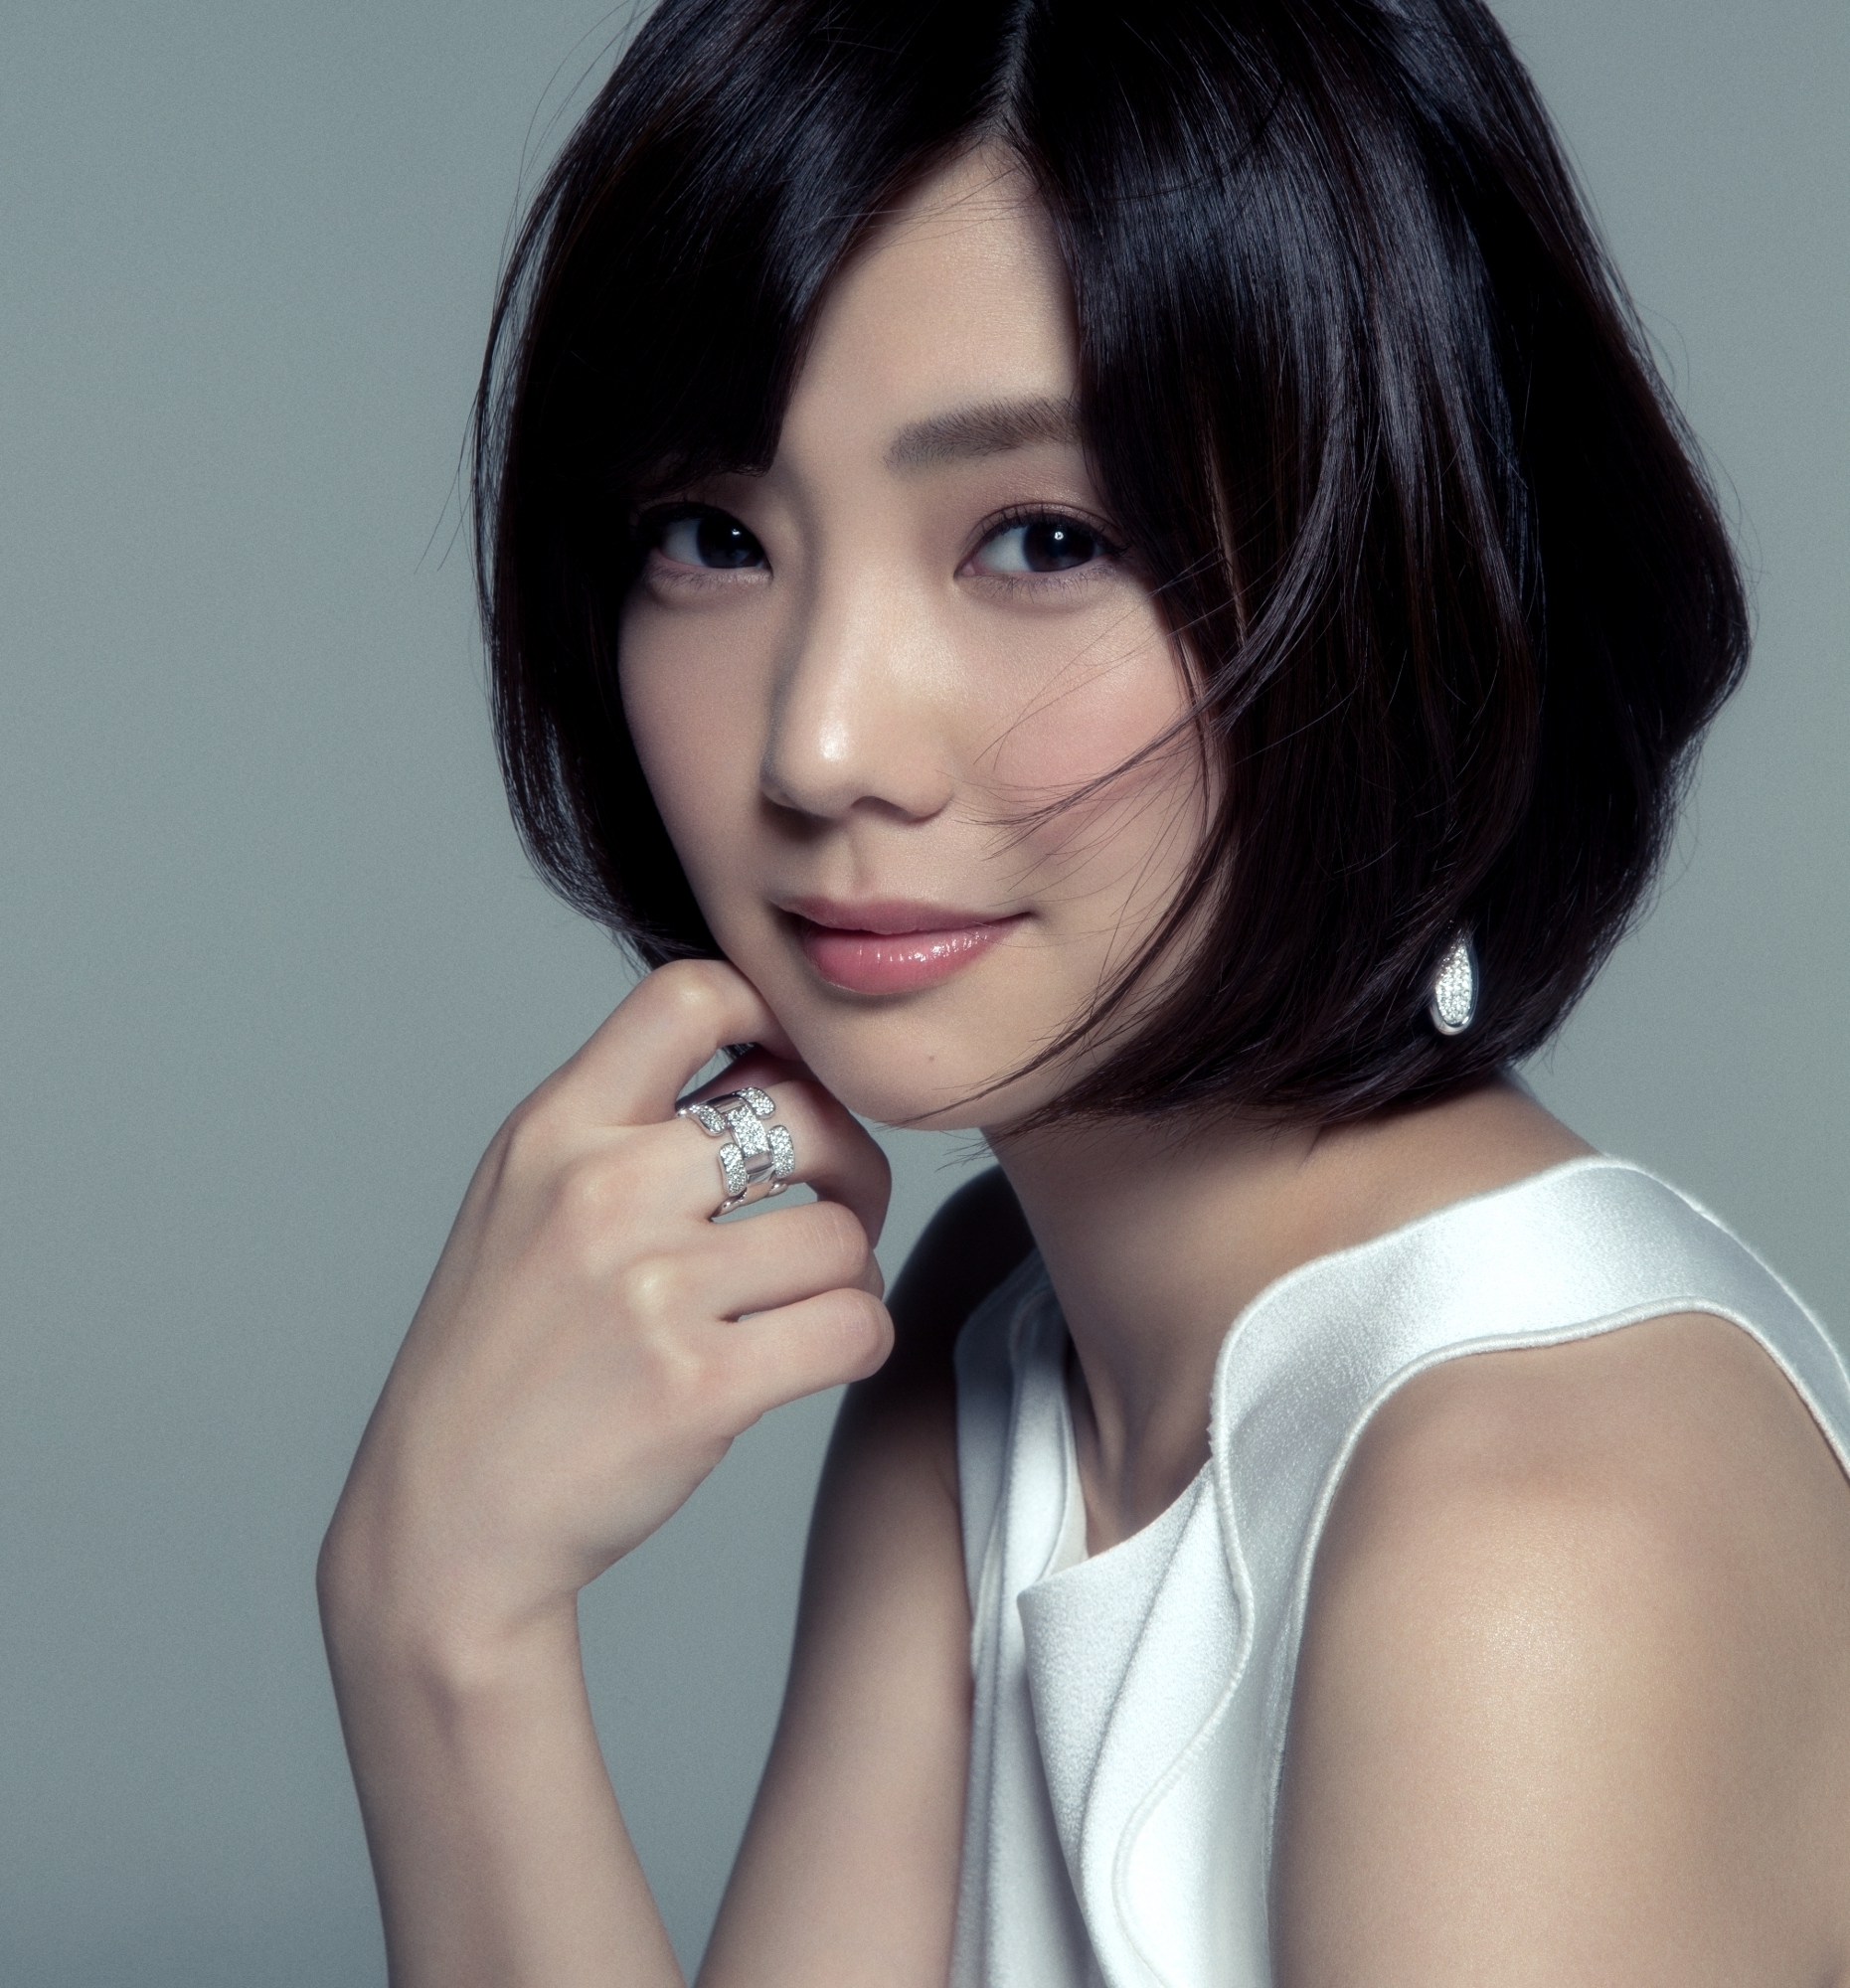 あの大物独身俳優と交際宣言をした女優 倉科カナの髪型画像集 エントピ Entertainment Topics